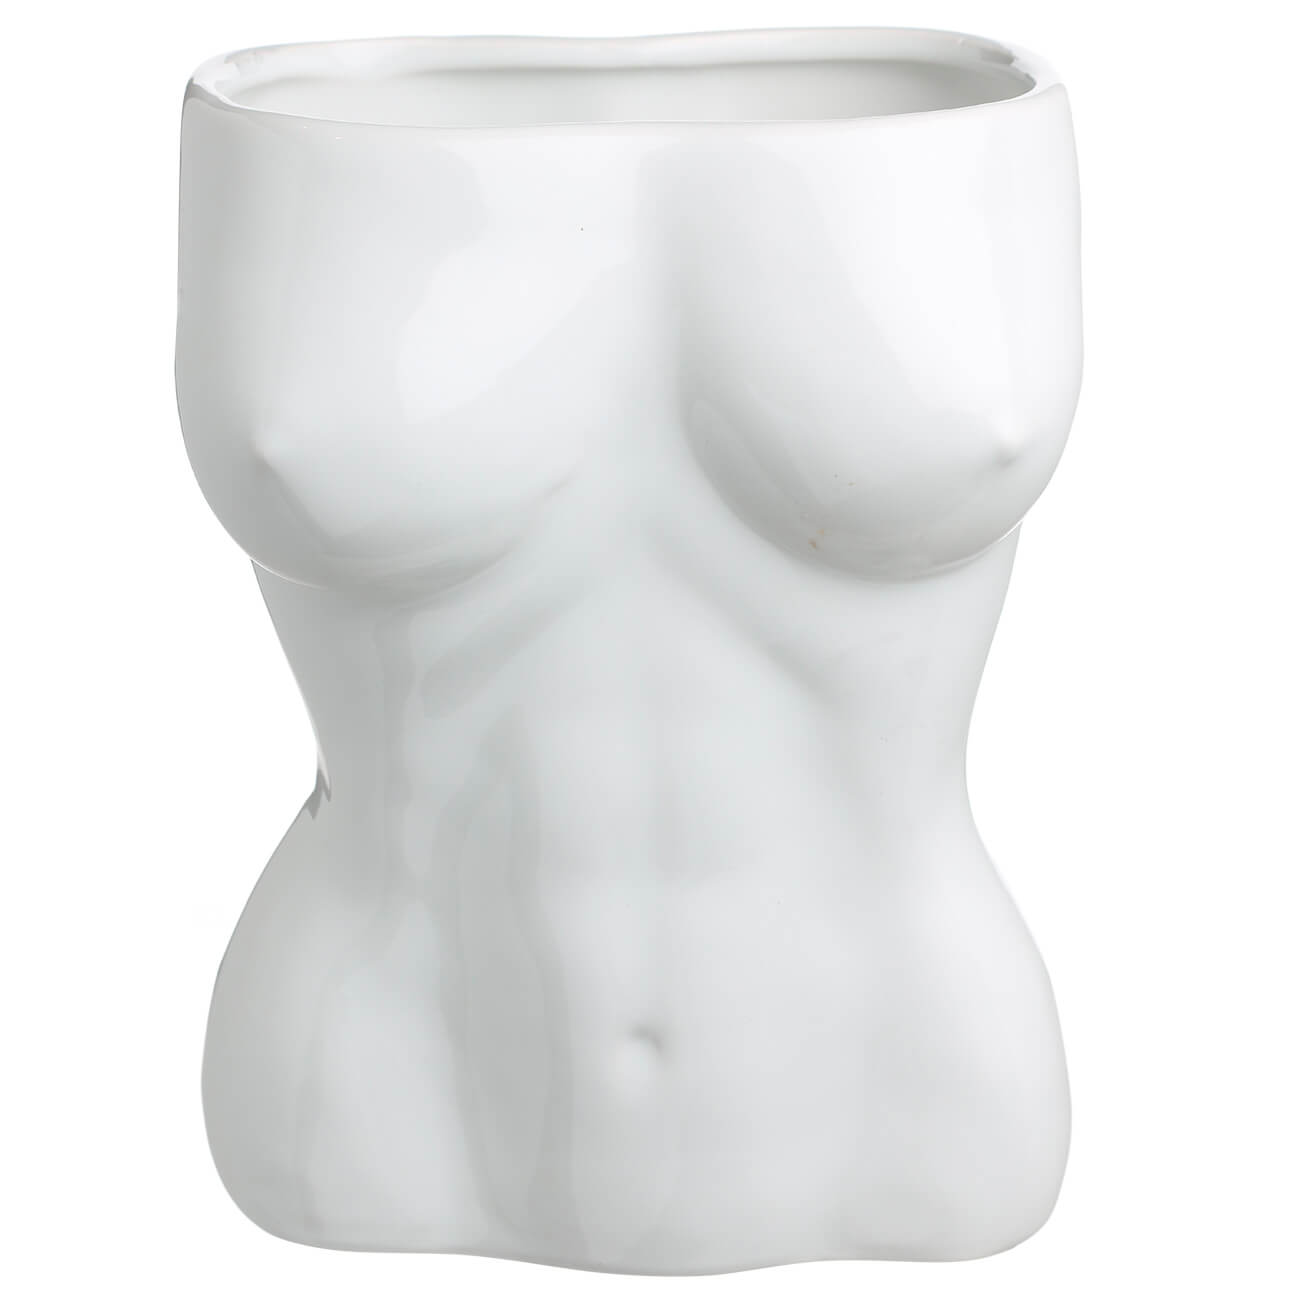 Ваза для цветов, 19 см, декоративная, керамика, белая, Женский бюст, Torso ваза для ов 37 см декоративная керамика белая мятый эффект crumple